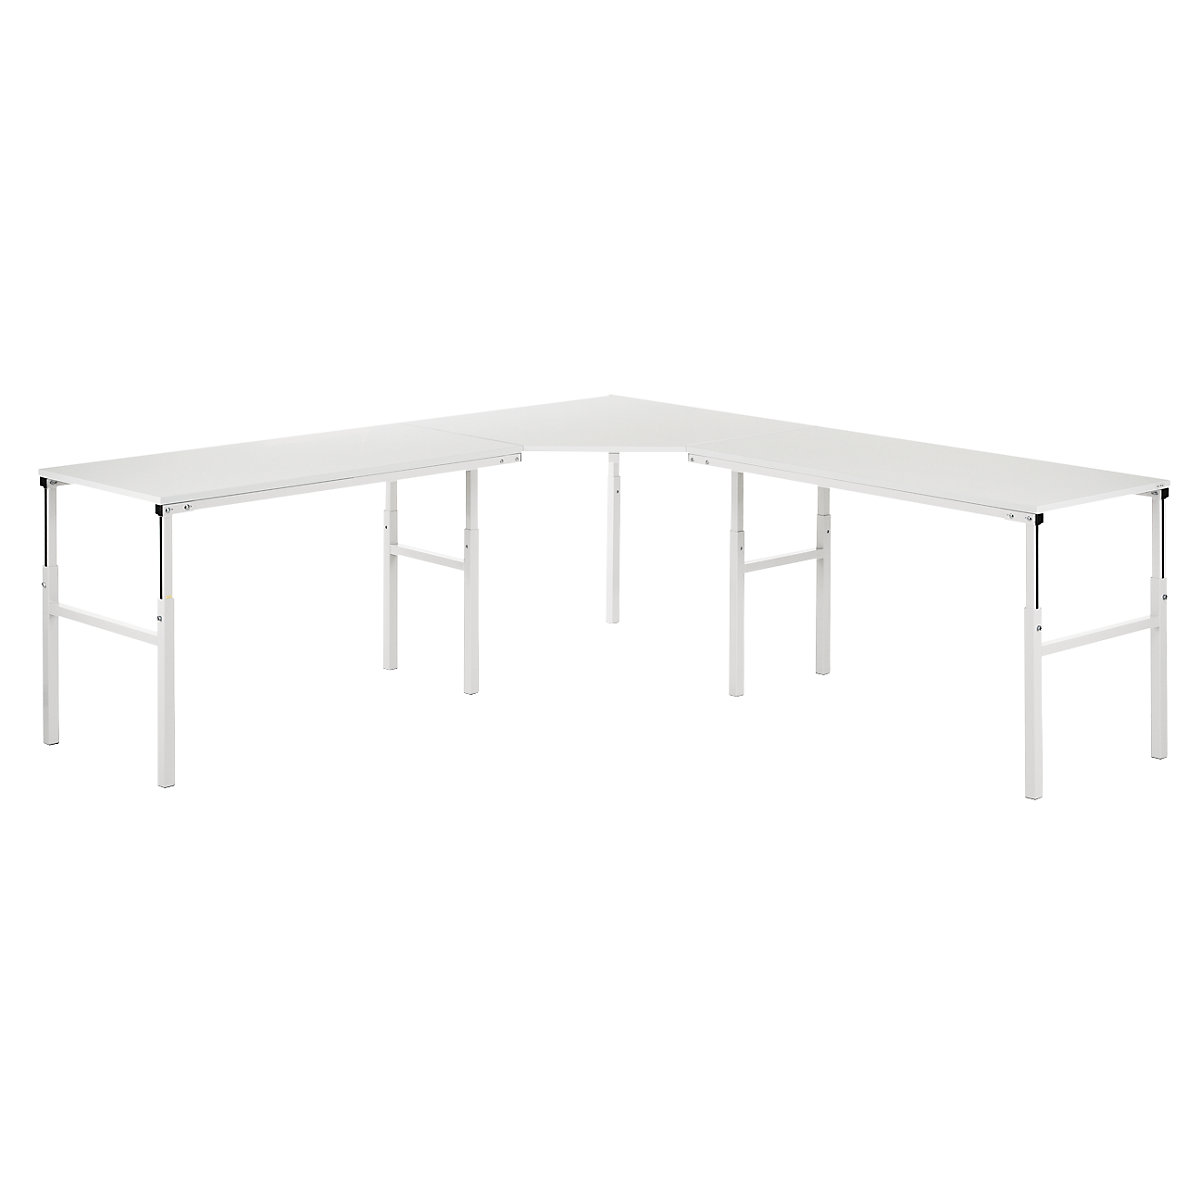 Treston – Pracovní stůl s ručním přestavováním výšky v rozsahu 650 až 900 mm, propojení 90°, pro 2 základní stoly, hloubka 700 mm